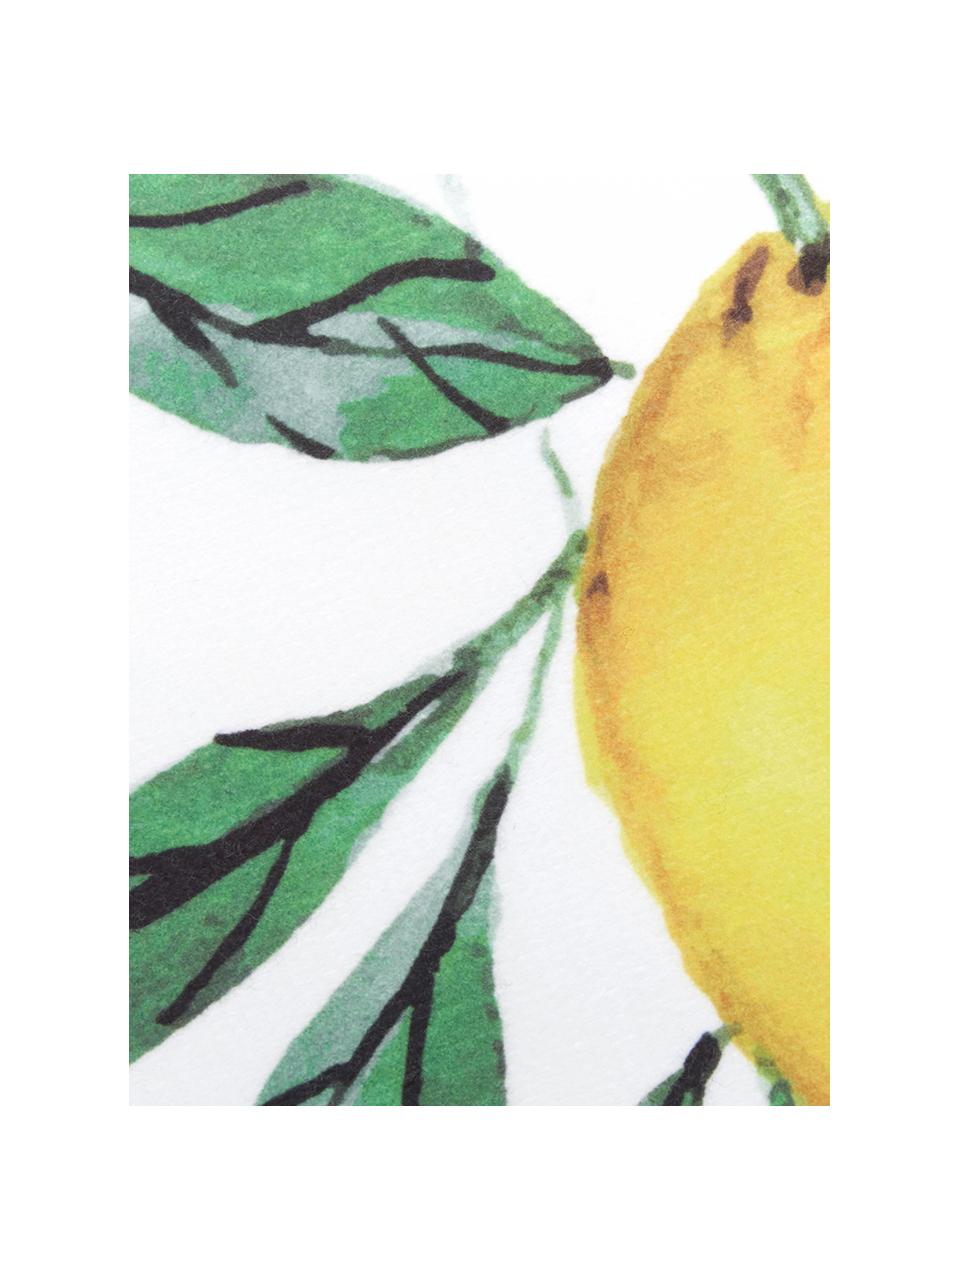 Tenká plážová osuška Lemon, 55 % polyester, 45 % bavlna
Velmi nízká gramáž, 340 g/m², Bílá, zelená, žlutá, Š 70 cm, D 150 cm